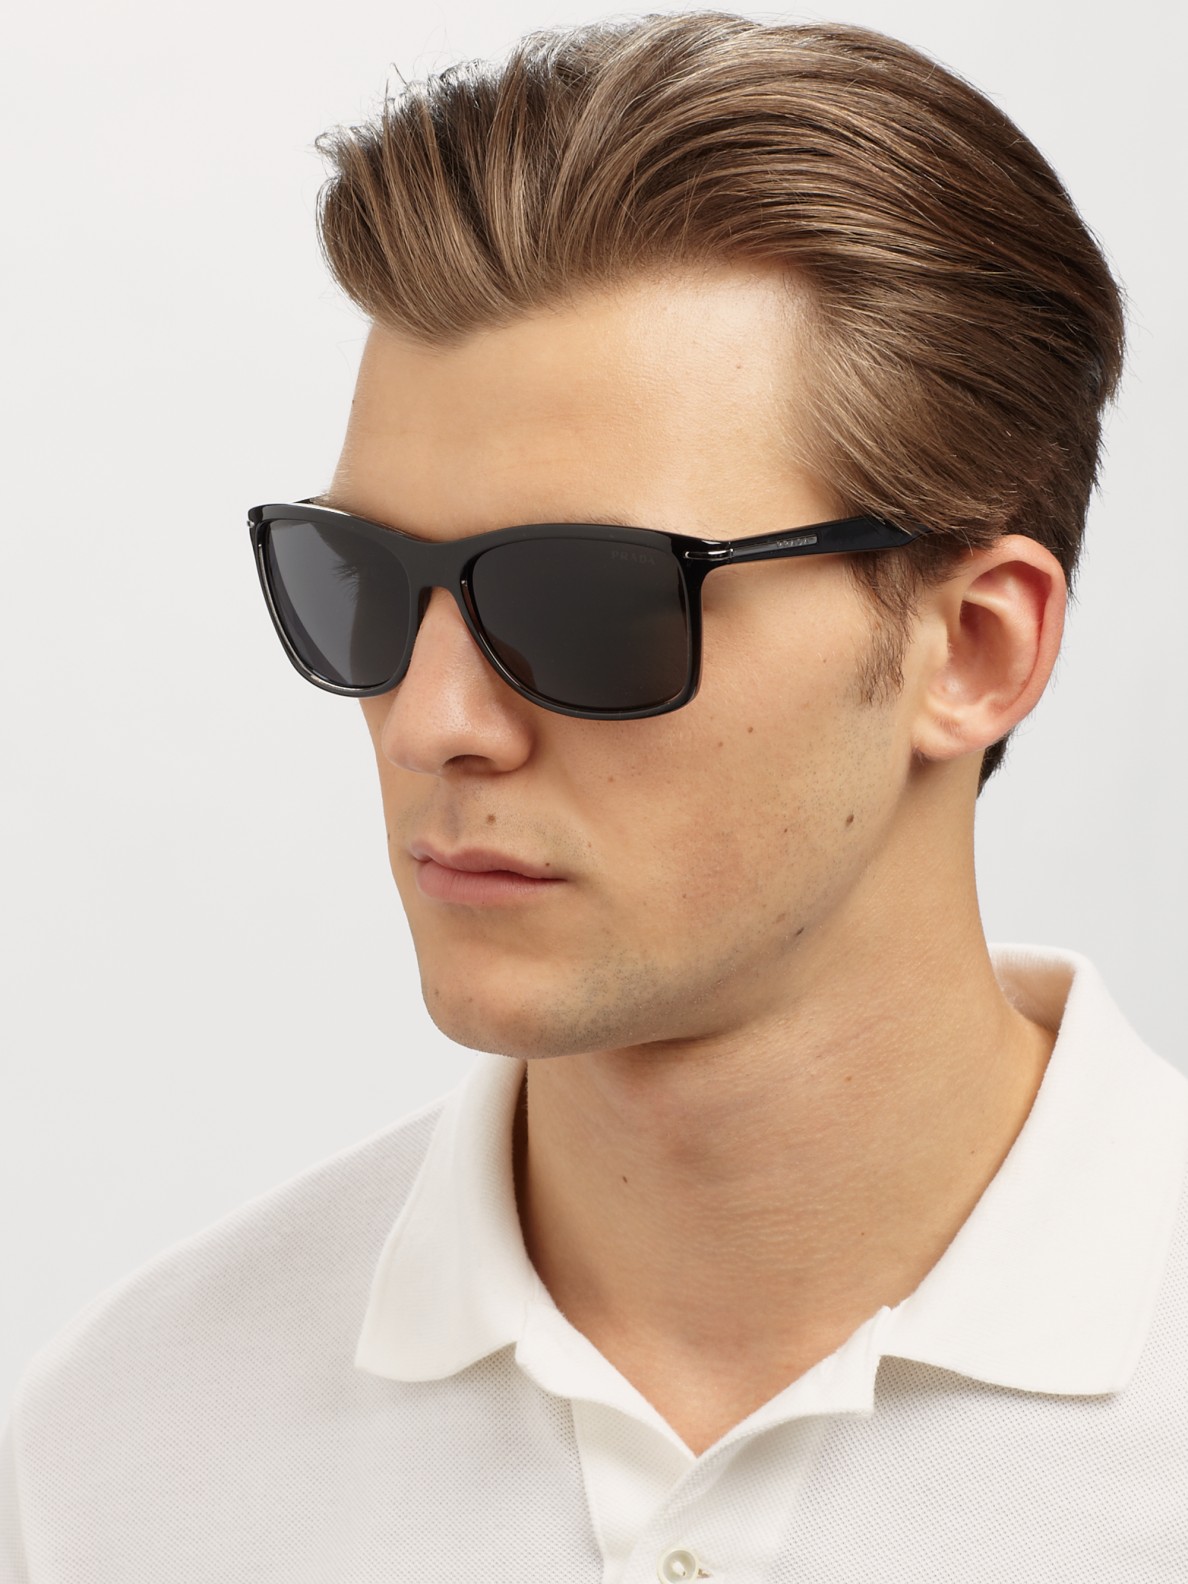 prada sunglasses wayfarer style